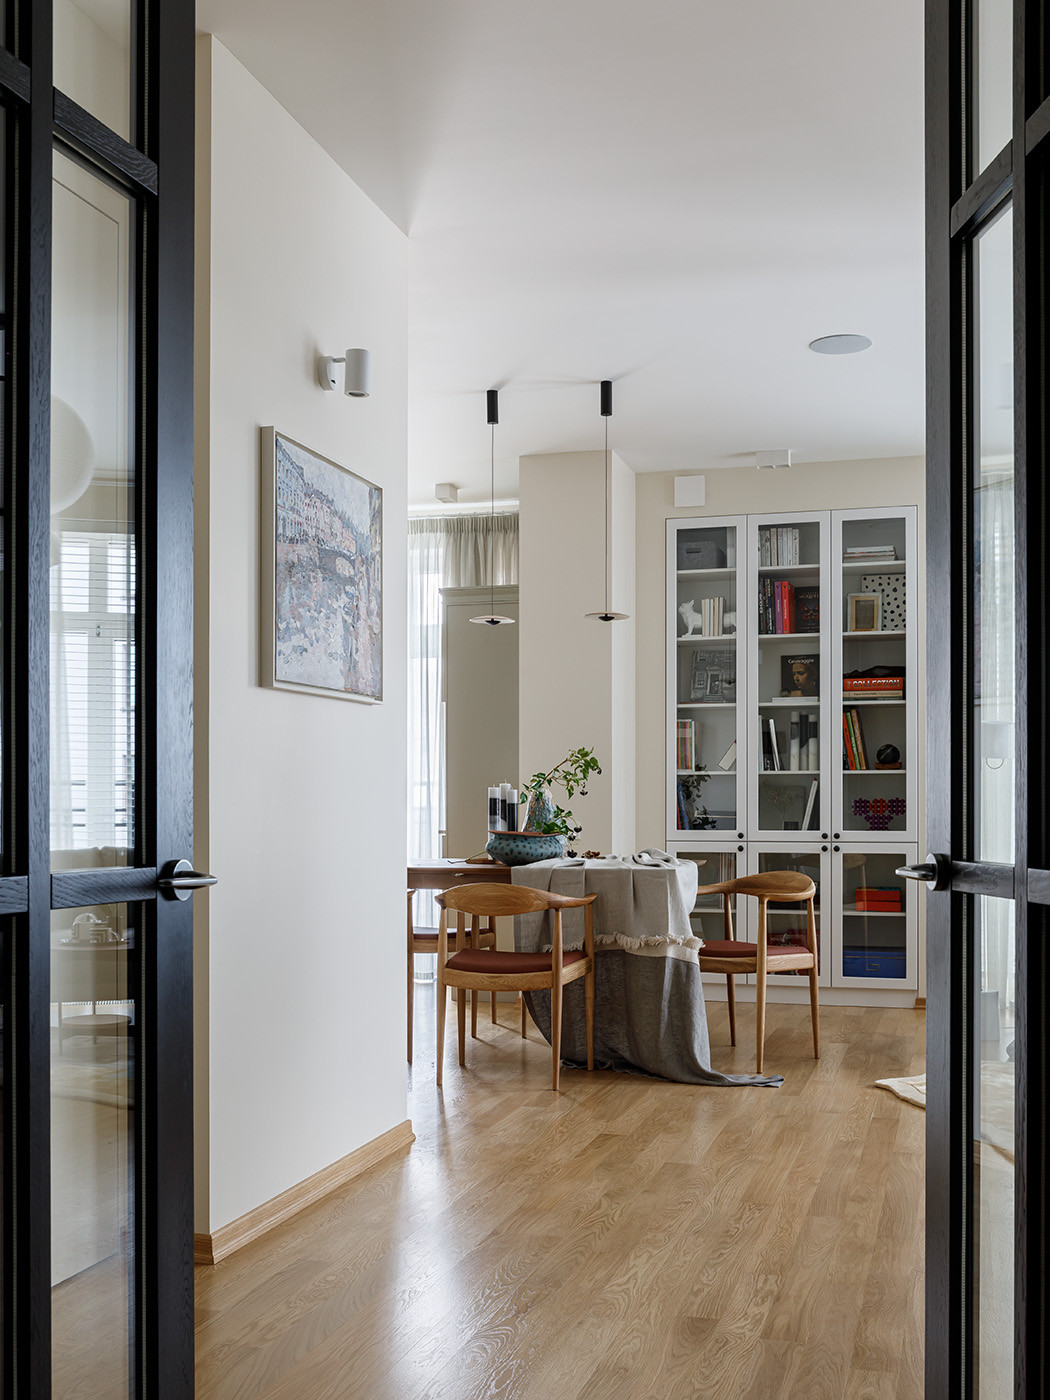 Квартира с радиусной планировкой идеи для дома,интерьер и дизайн